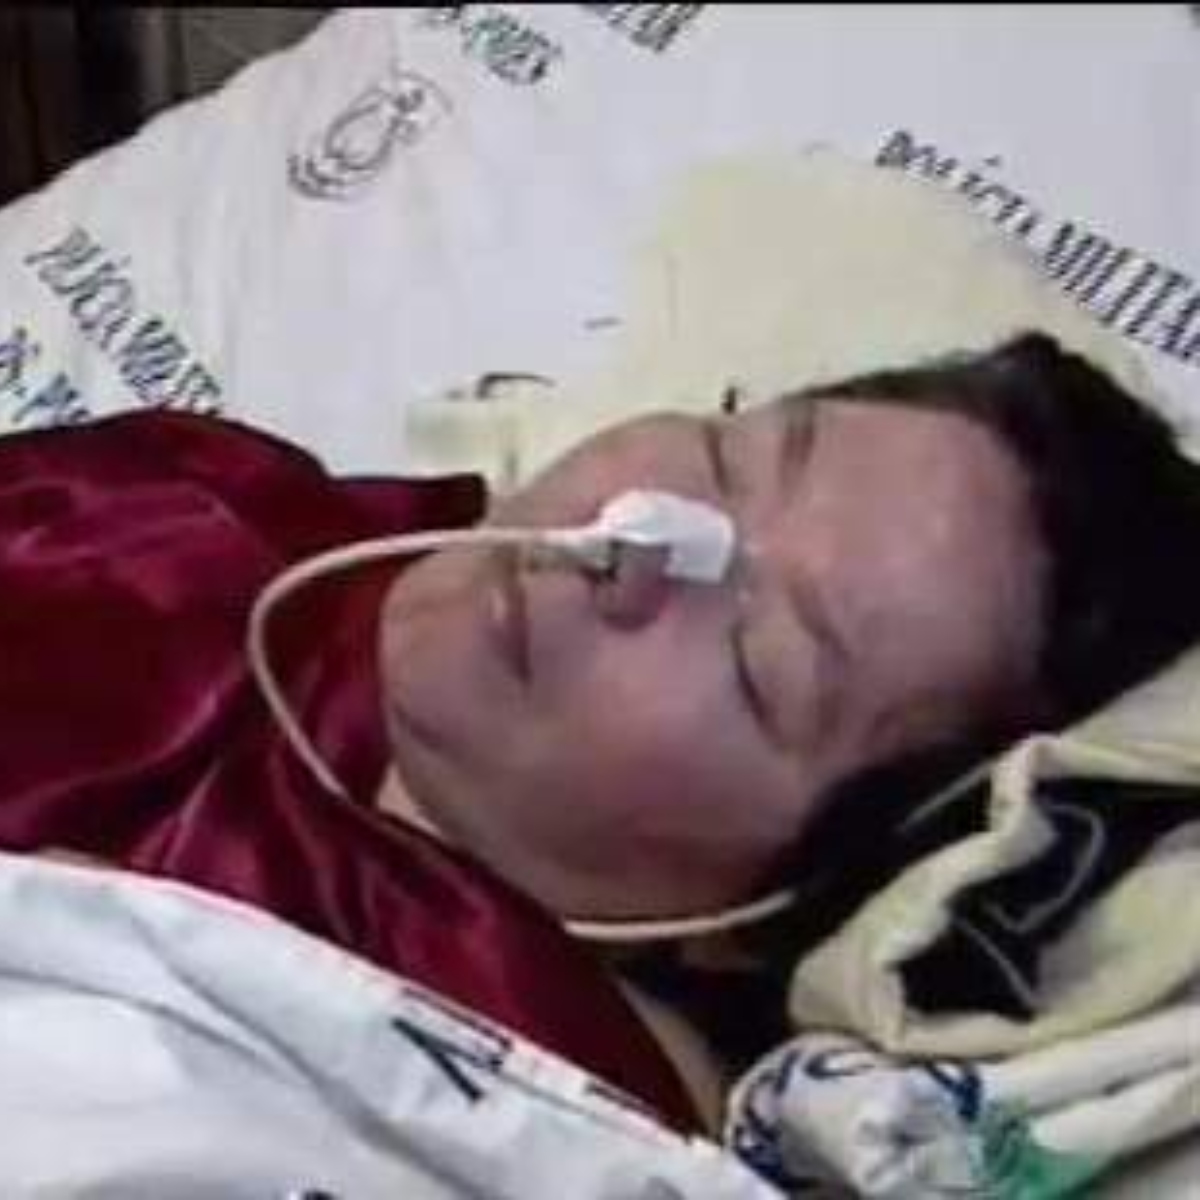  Morre Clarinha, paciente internada há 24 anos e que nunca recebeu uma visita 